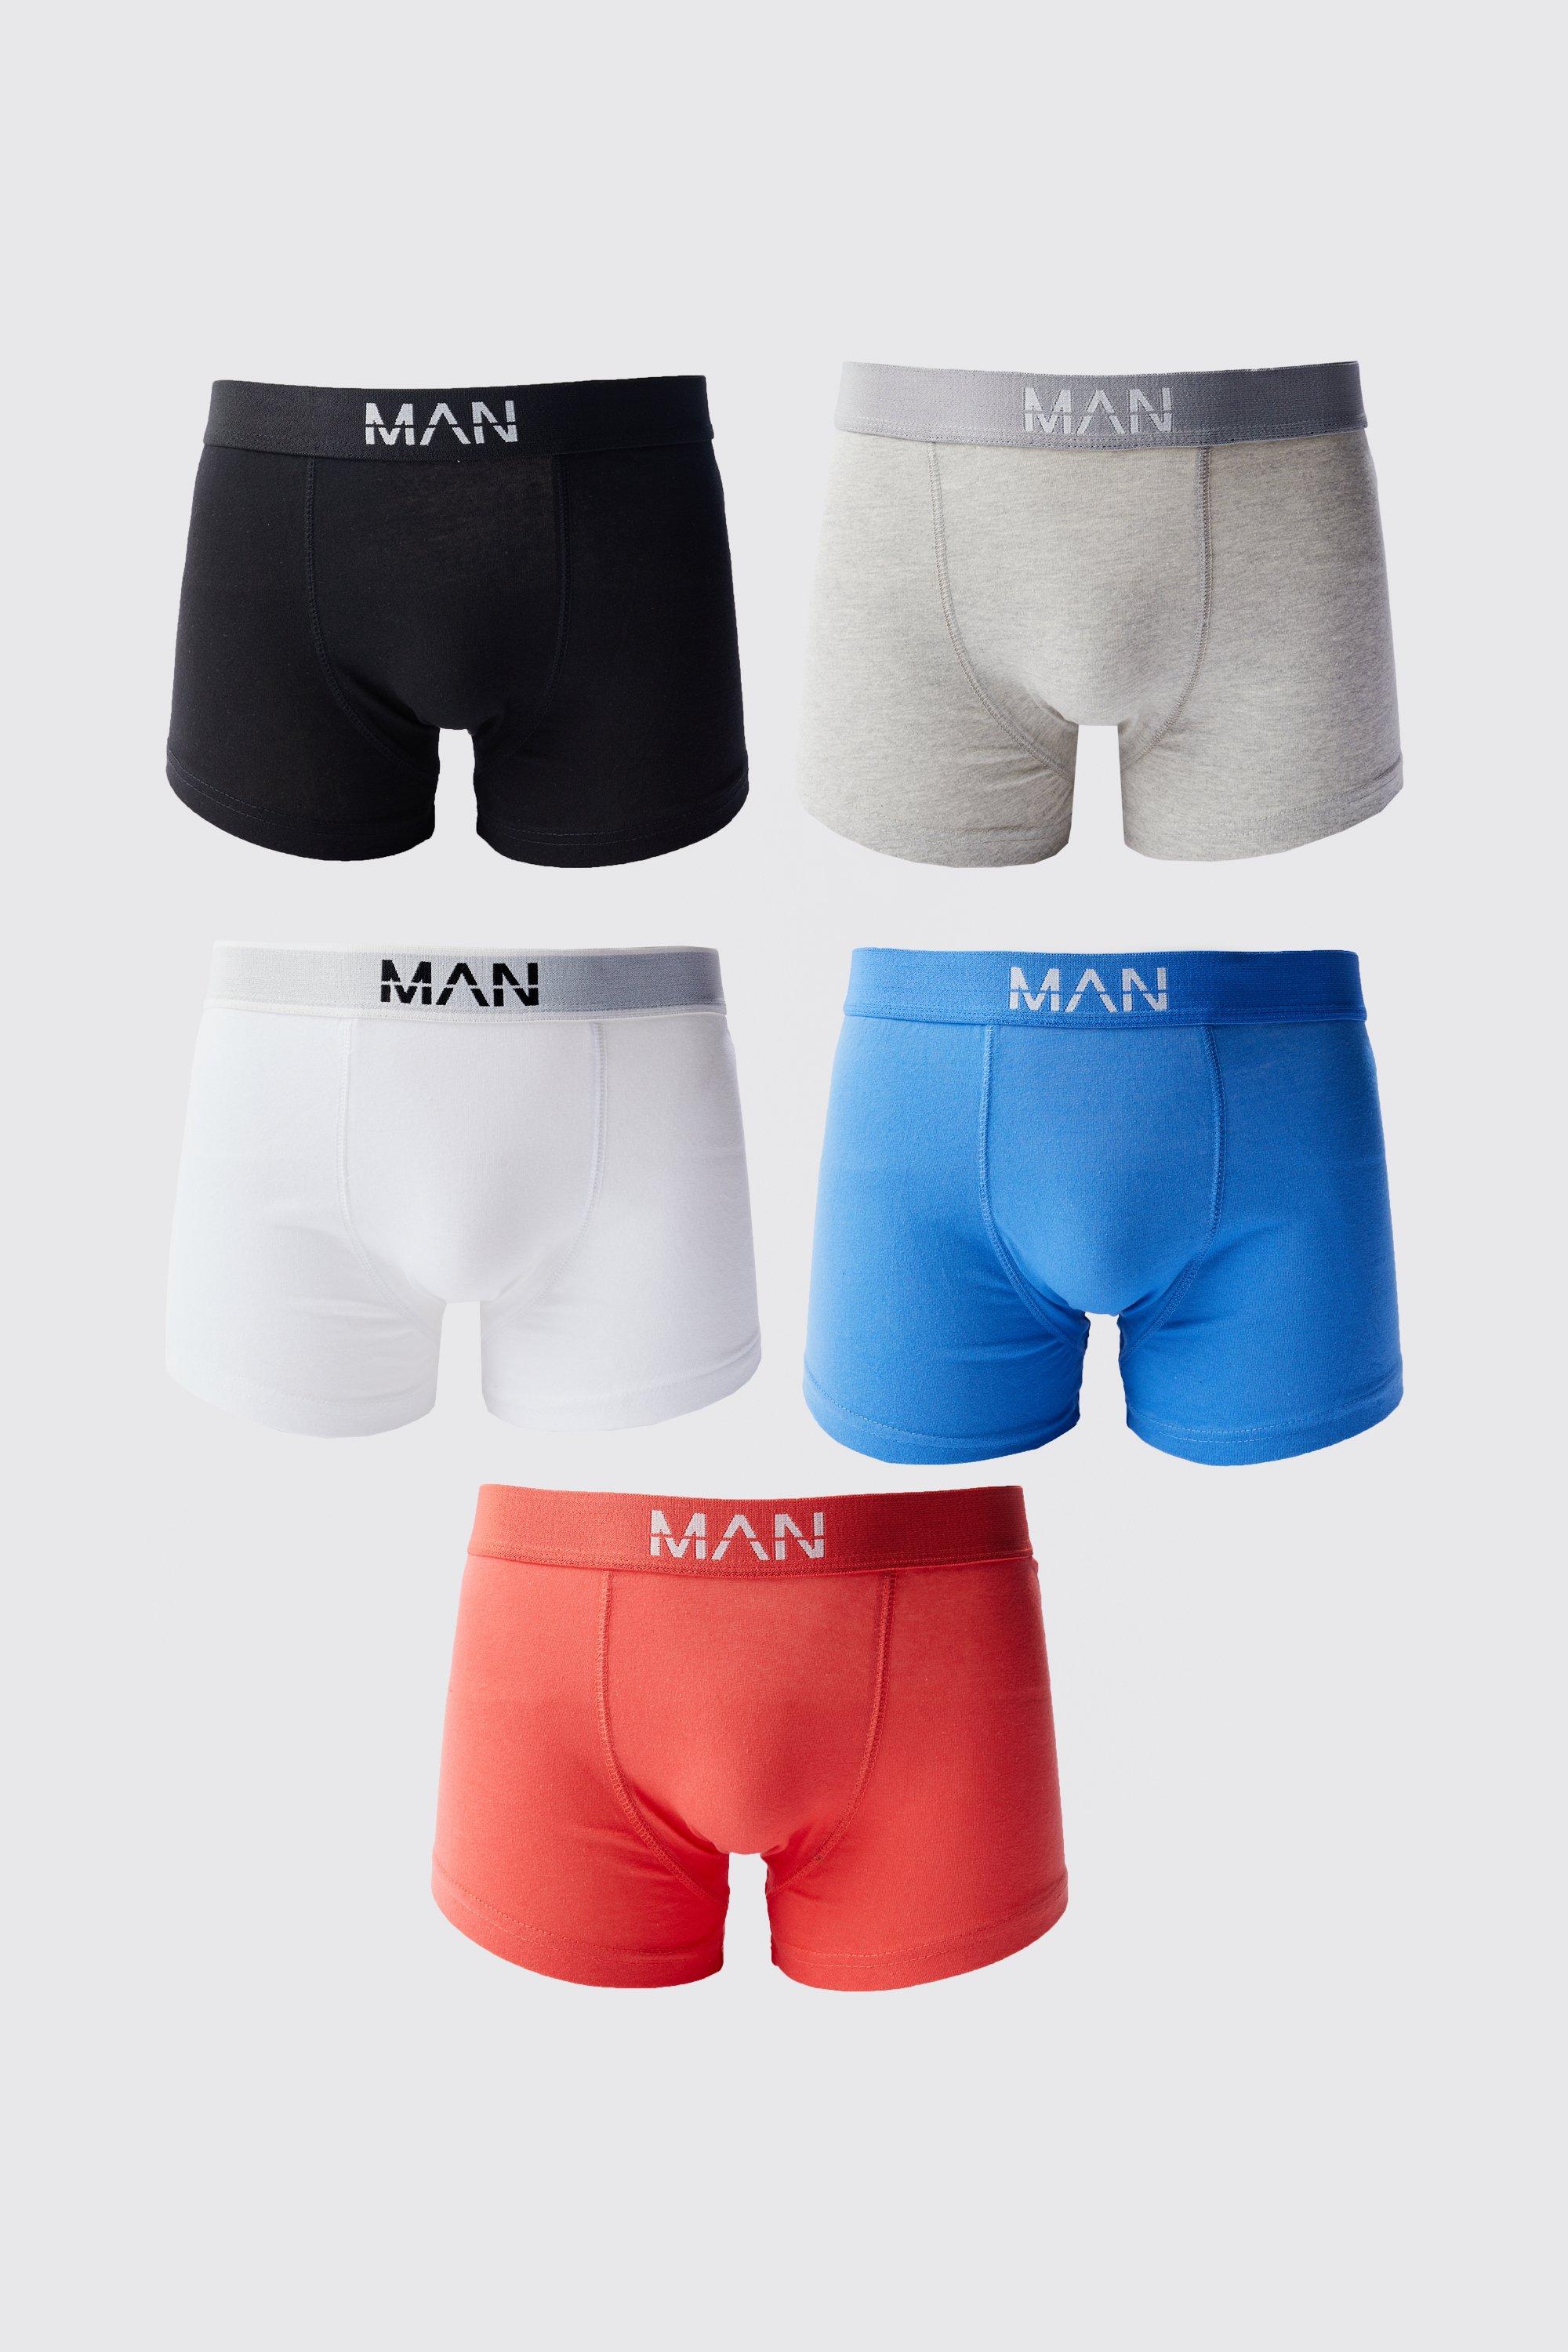 lot de 5 boxers colorés - man homme - multicolore - xl, multicolore